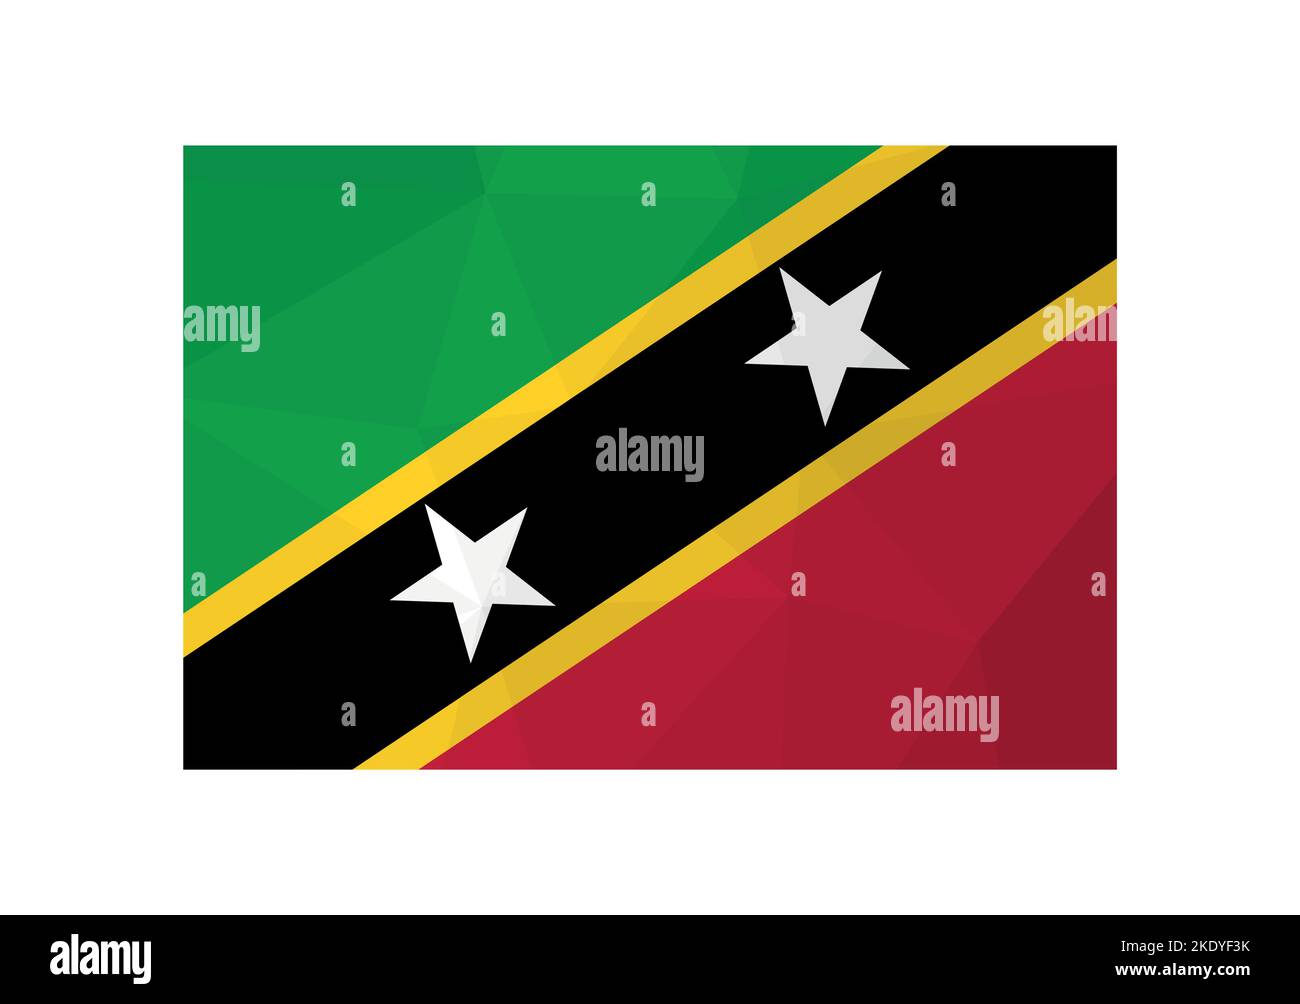 Vektorgrafik. Offizieller Fähnrich von St. Kitts und Nevis. Nationalflagge mit Sternen und grünen, roten, schwarzen Farben. Kreatives Design in Low-Poly-Stil Stock Vektor